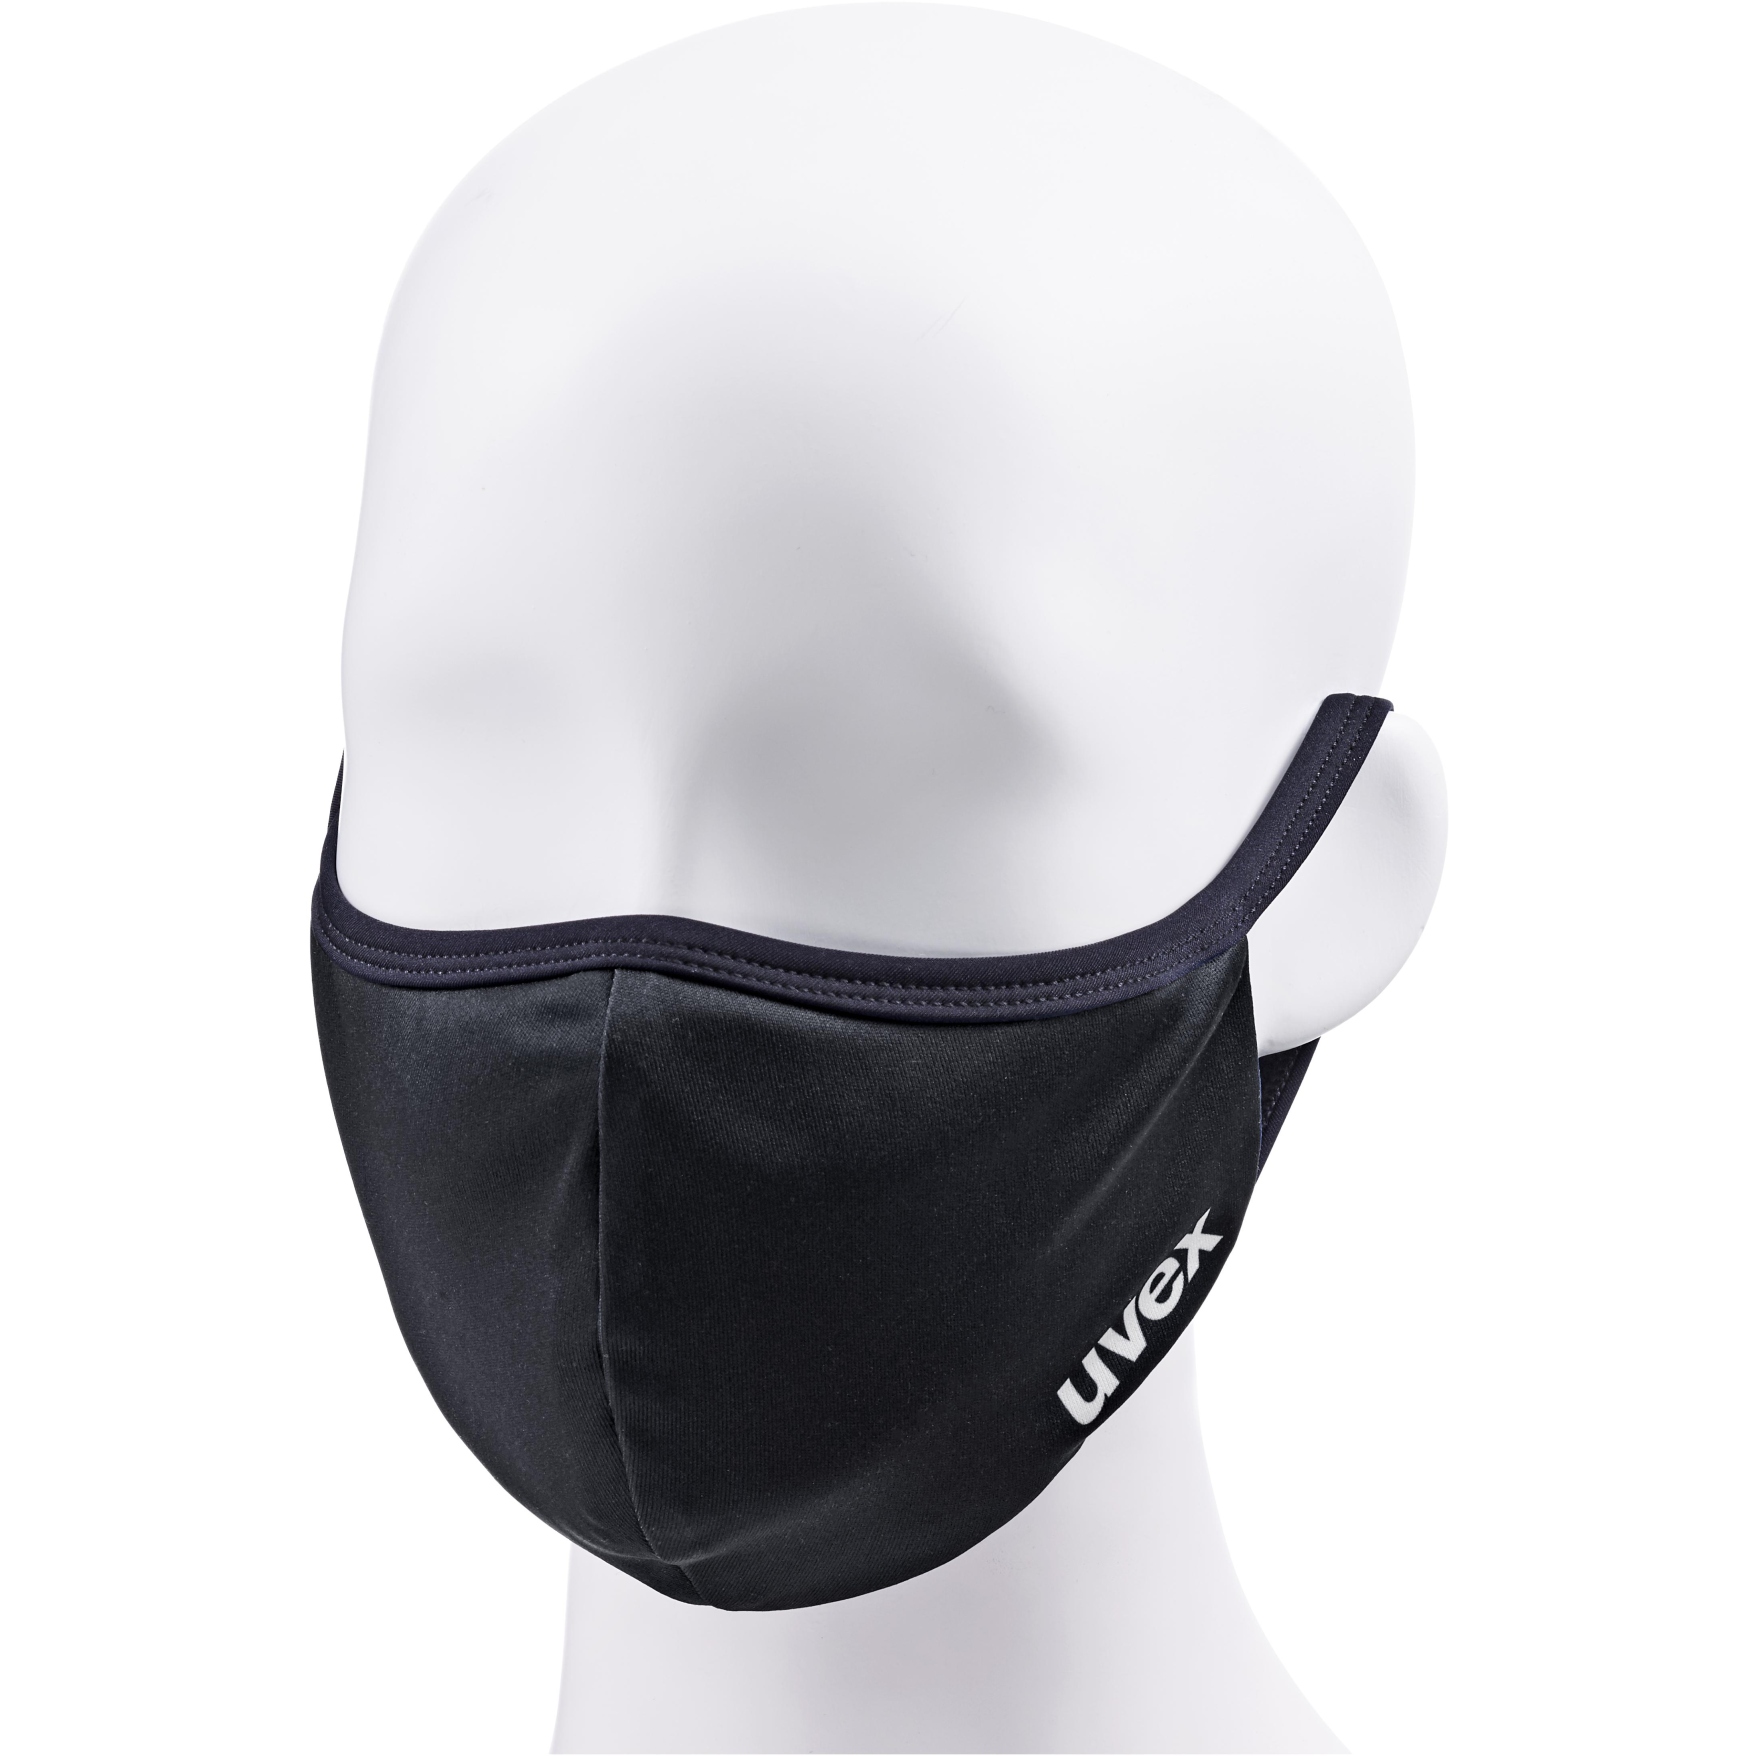 Produktbild von Uvex Mund-Nasen-Maske - schwarz